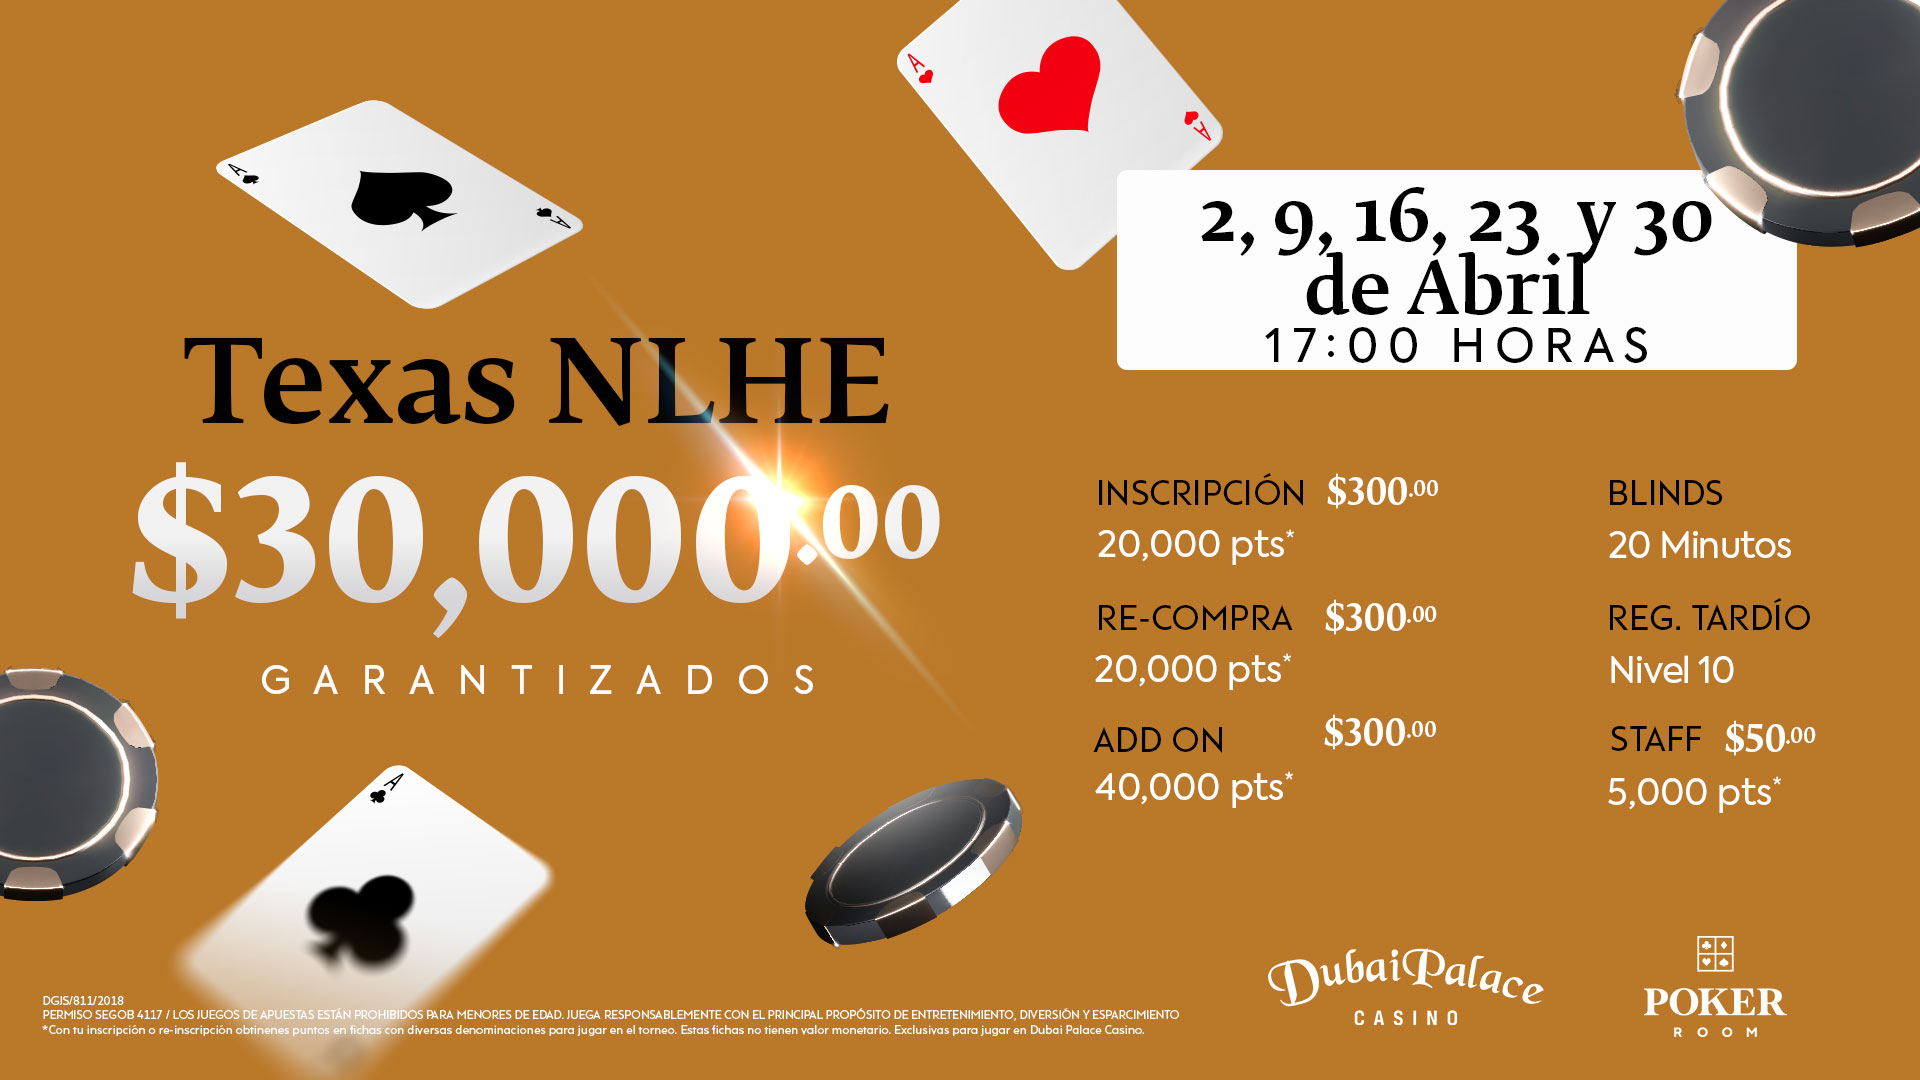 Torneo Texas NLHE con $30,000 pesos garantizados